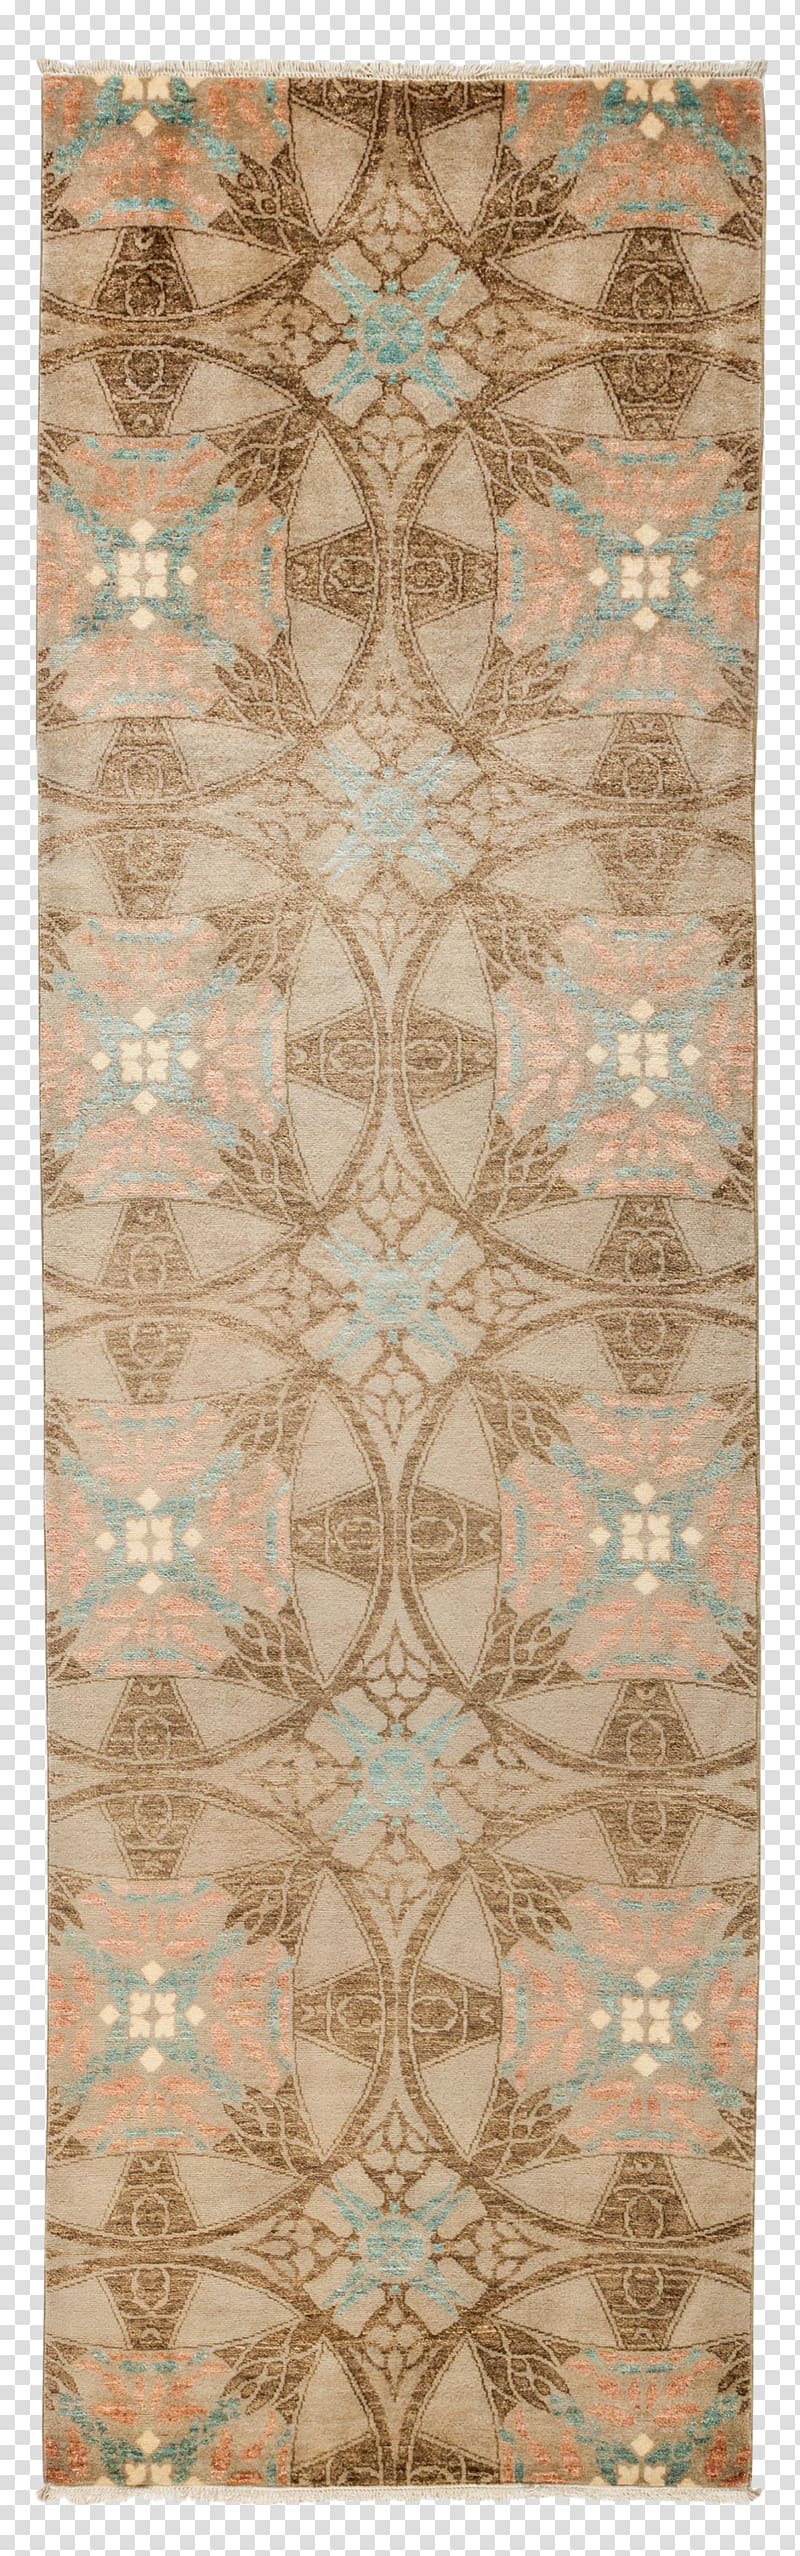 Carpet Suzani Brown Beige Lace, vintage tile transparent background PNG clipart